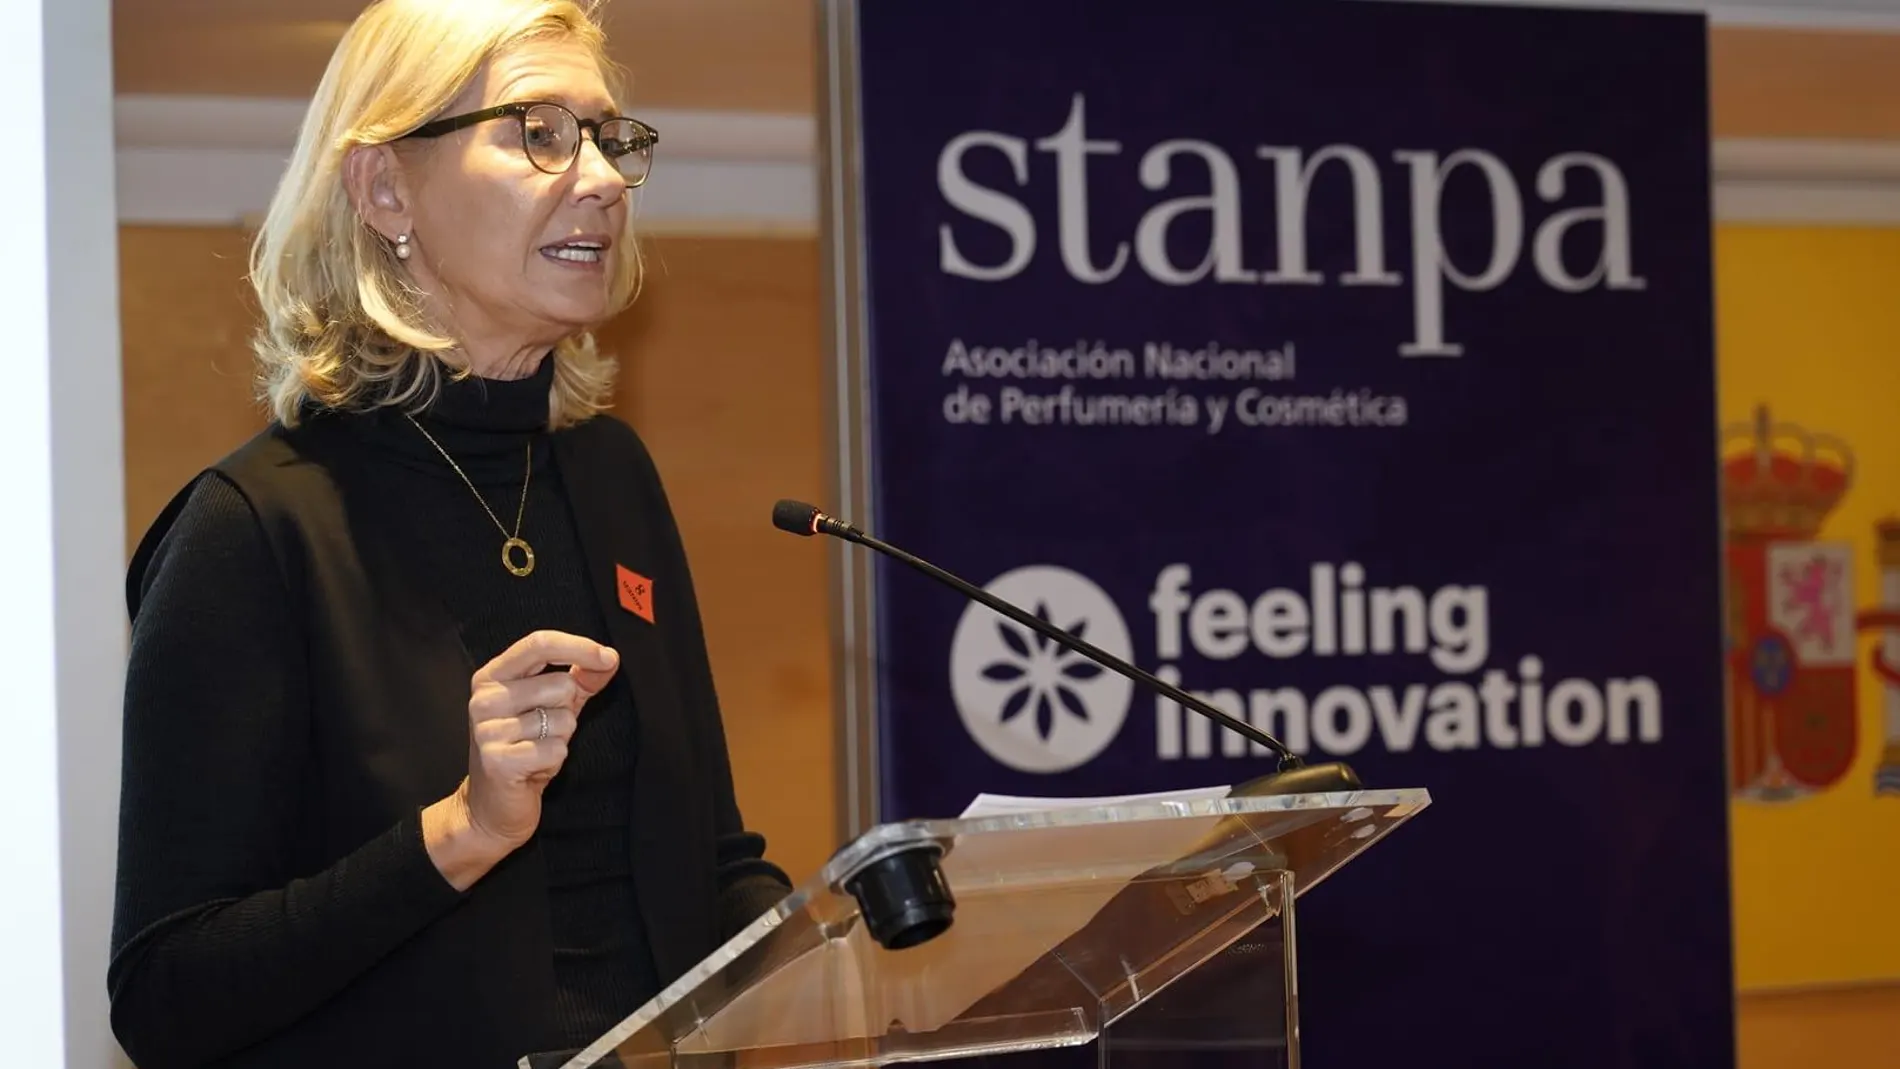 "La innovación es esa forma de prosperar que nos guía hacia un camino en el que necesitamos alianzas", afirma Verónica Fisas, presidenta de Stanpa